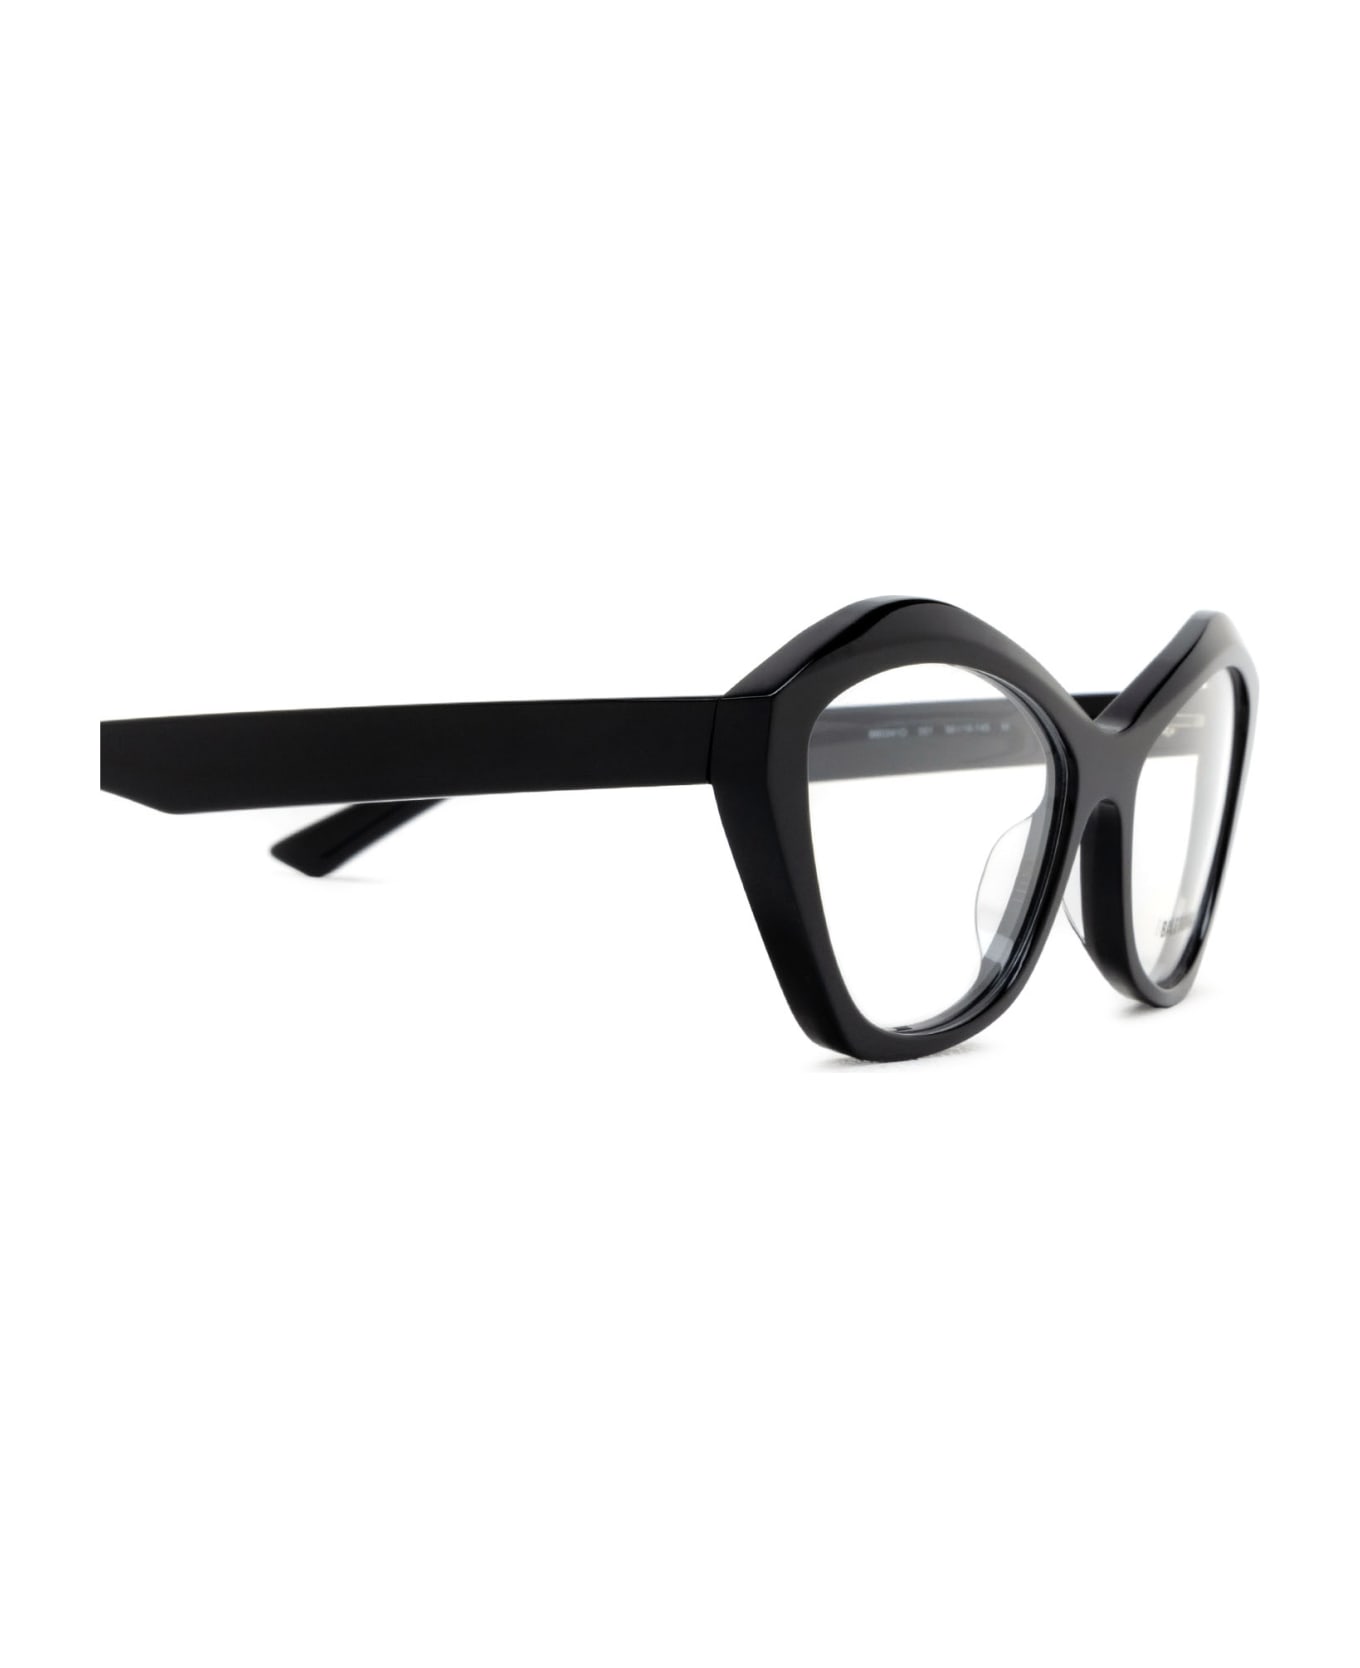 Balenciaga Eyewear Bb0341o Glasses - Black